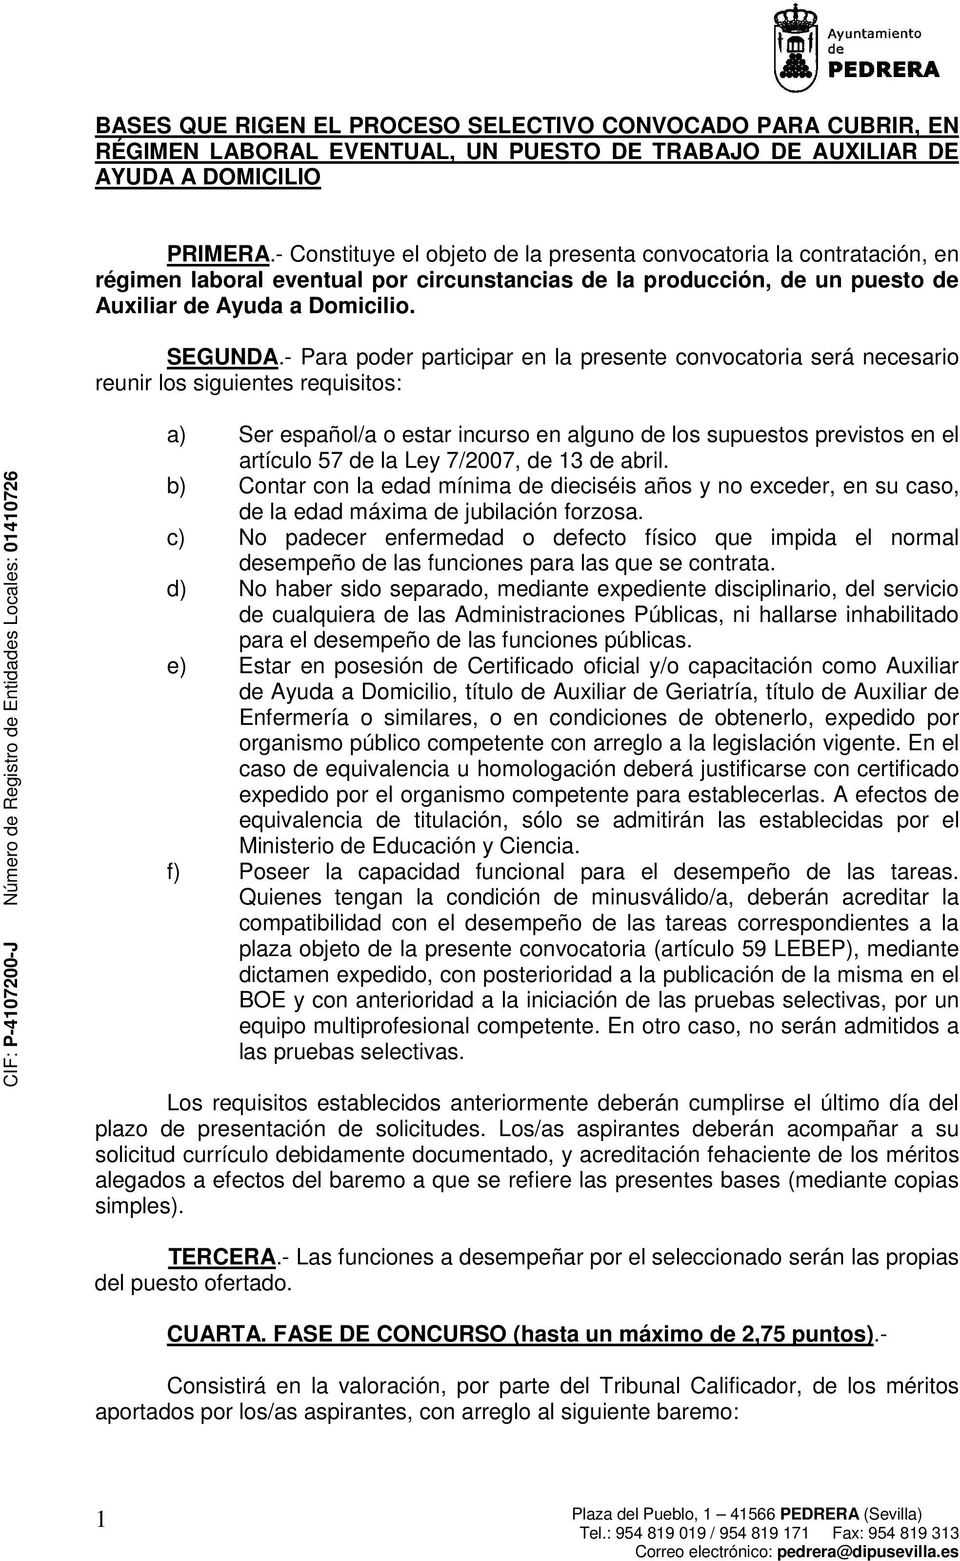 - Para poder participar en la presente convocatoria será necesario reunir los siguientes requisitos: a) Ser español/a o estar incurso en alguno de los supuestos previstos en el artículo 57 de la Ley